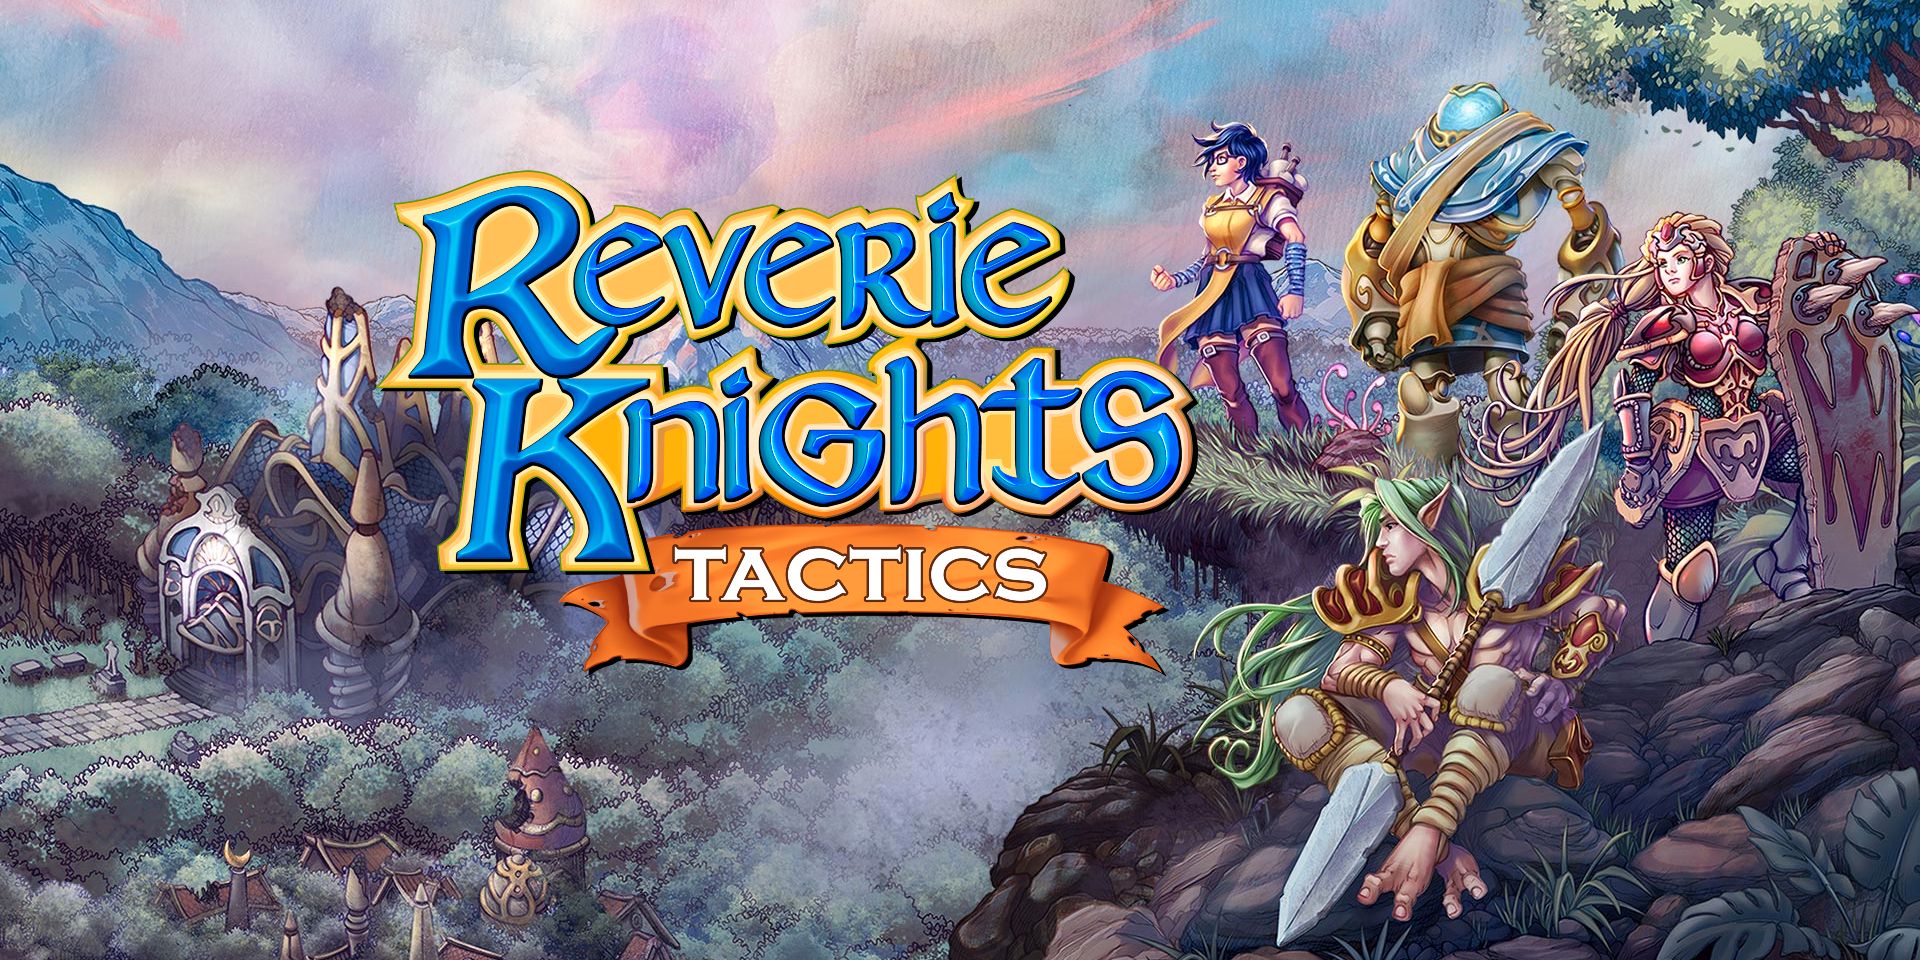 Reverie Knights Tactics Review: un interesante juego de estrategia por turnos